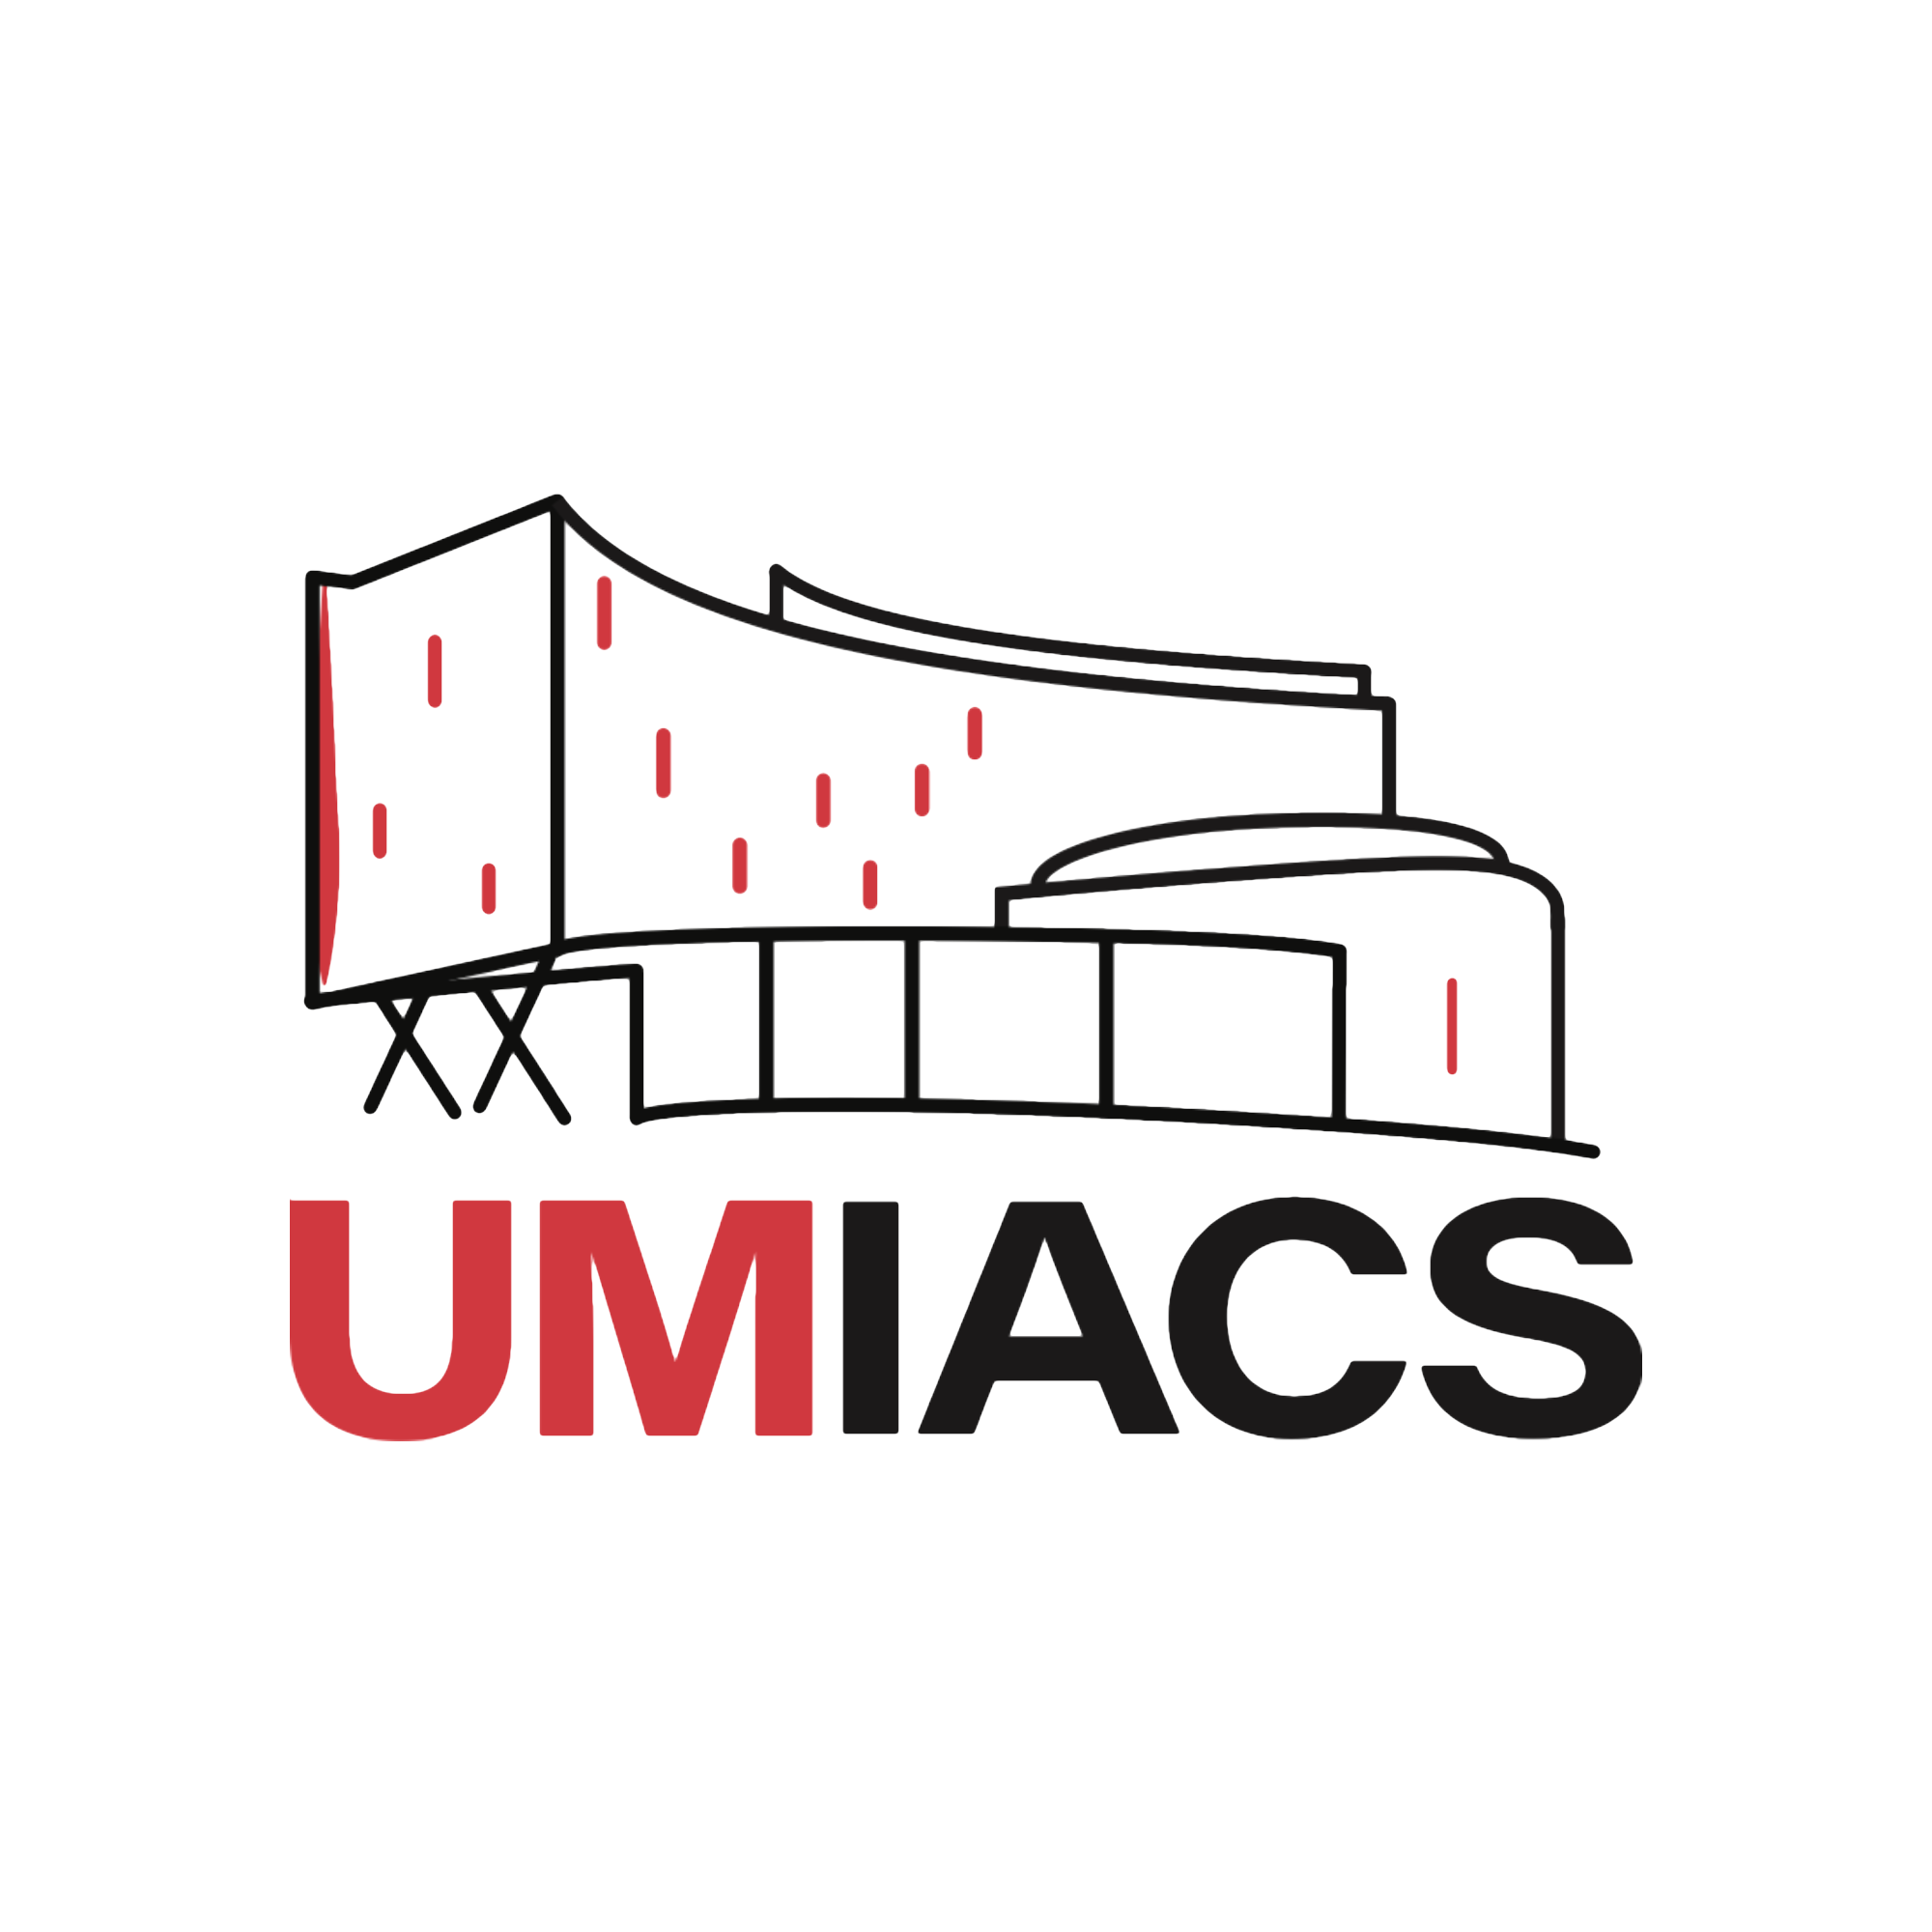 UMD Institute for Advanced Computer Studies logo